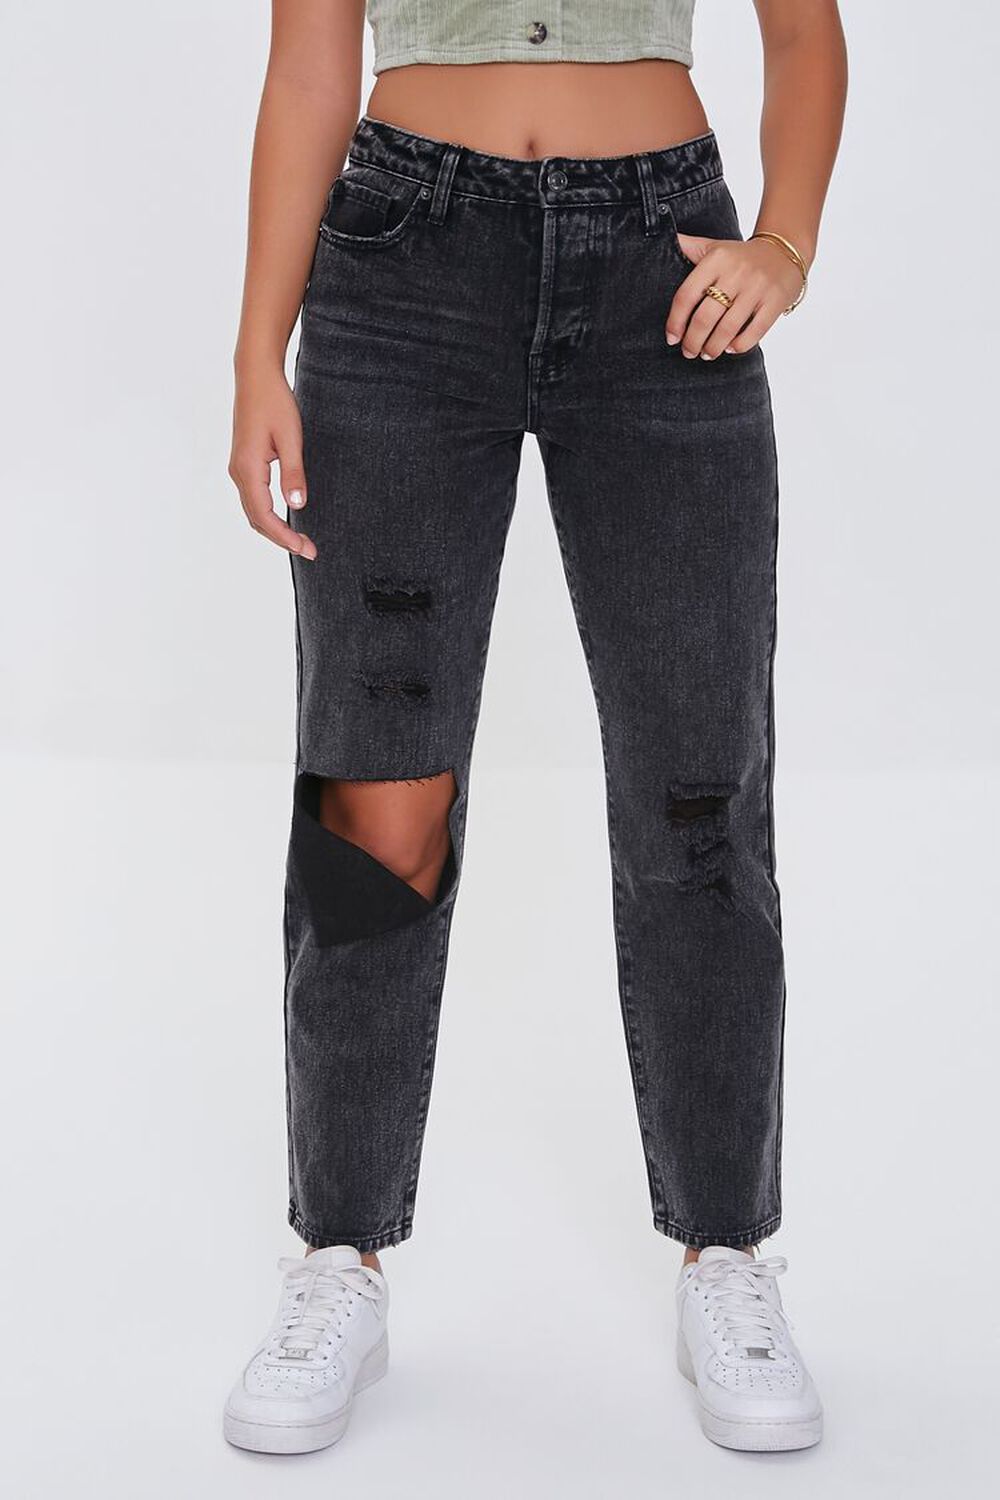 WASHED BLACK Premium Boyfriend Jeans, image 2